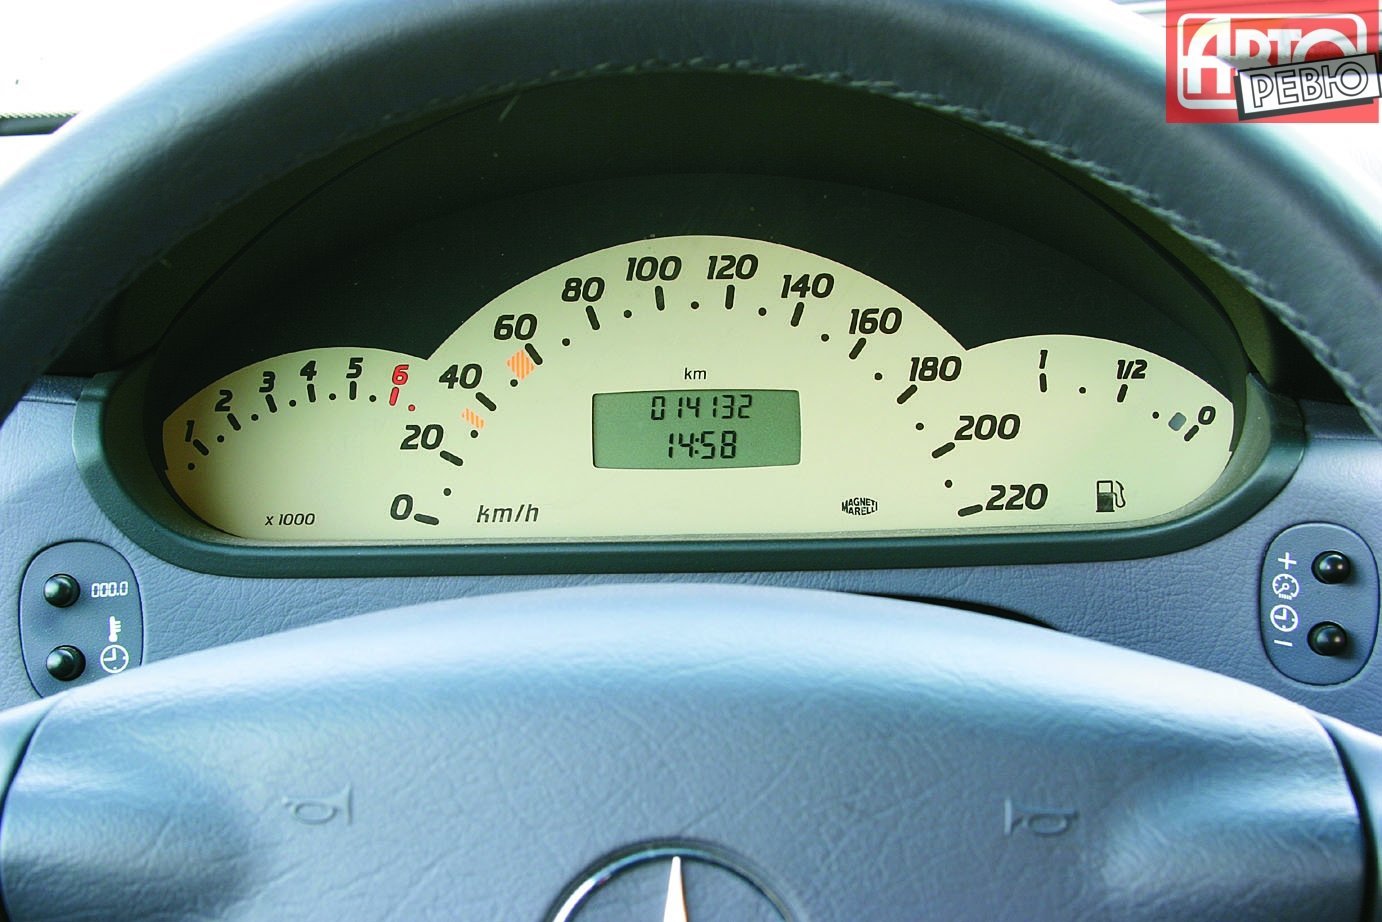 хэтчбек 5 дв. Long Mercedes-Benz A-klasse 2001 - 2004г выпуска модификация 1.4 AT (82 л.с.)